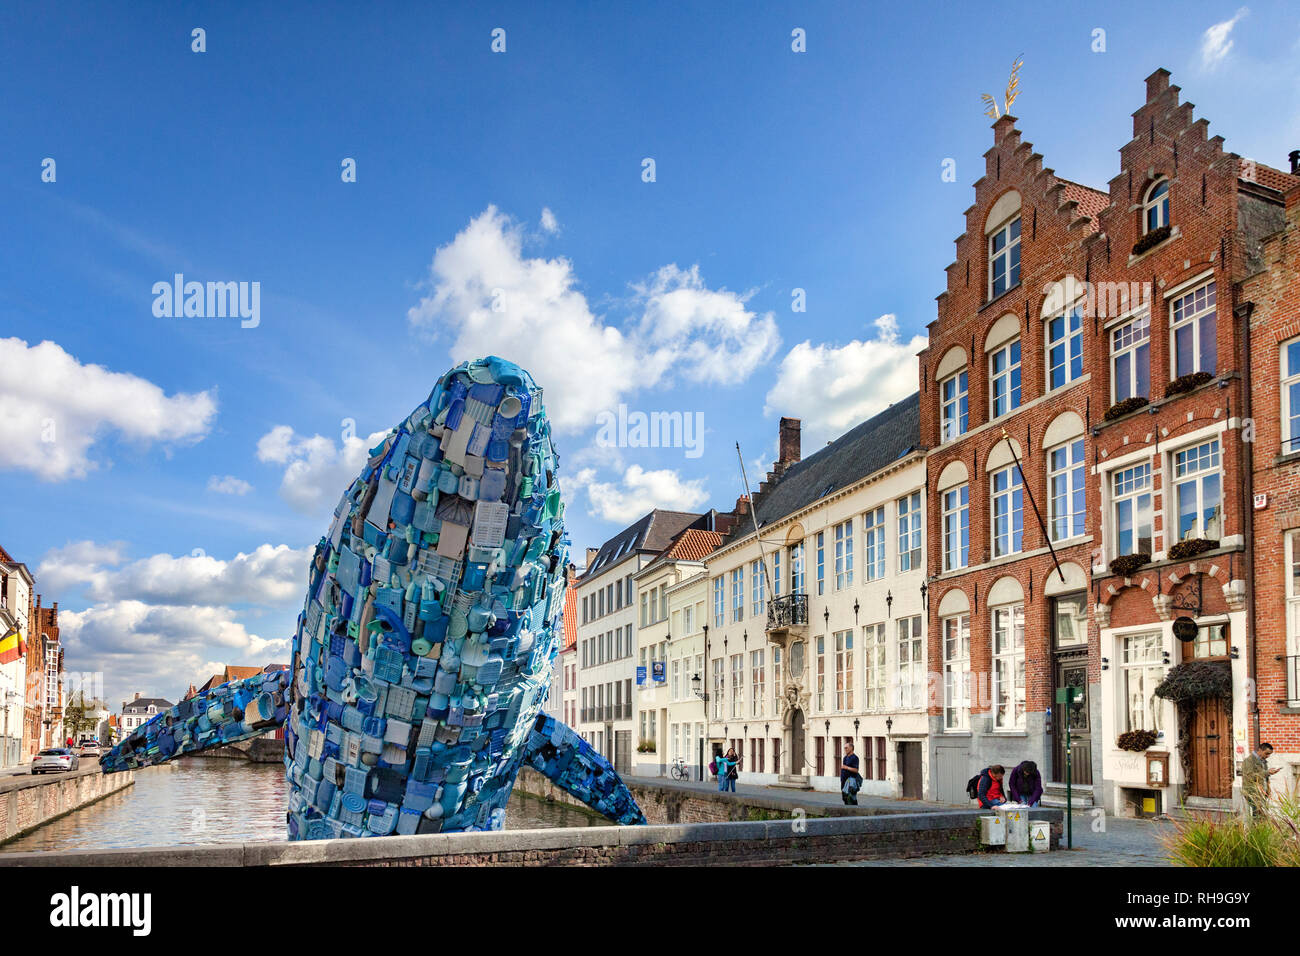 25 Septembre 2018 : Bruges, Belgique - bruges la baleine, connu sous le nom de gratte-ciel, fait à partir de 5 tonnes de déchets plastiques sont retirés de l'océan Pacifique, pour... Banque D'Images